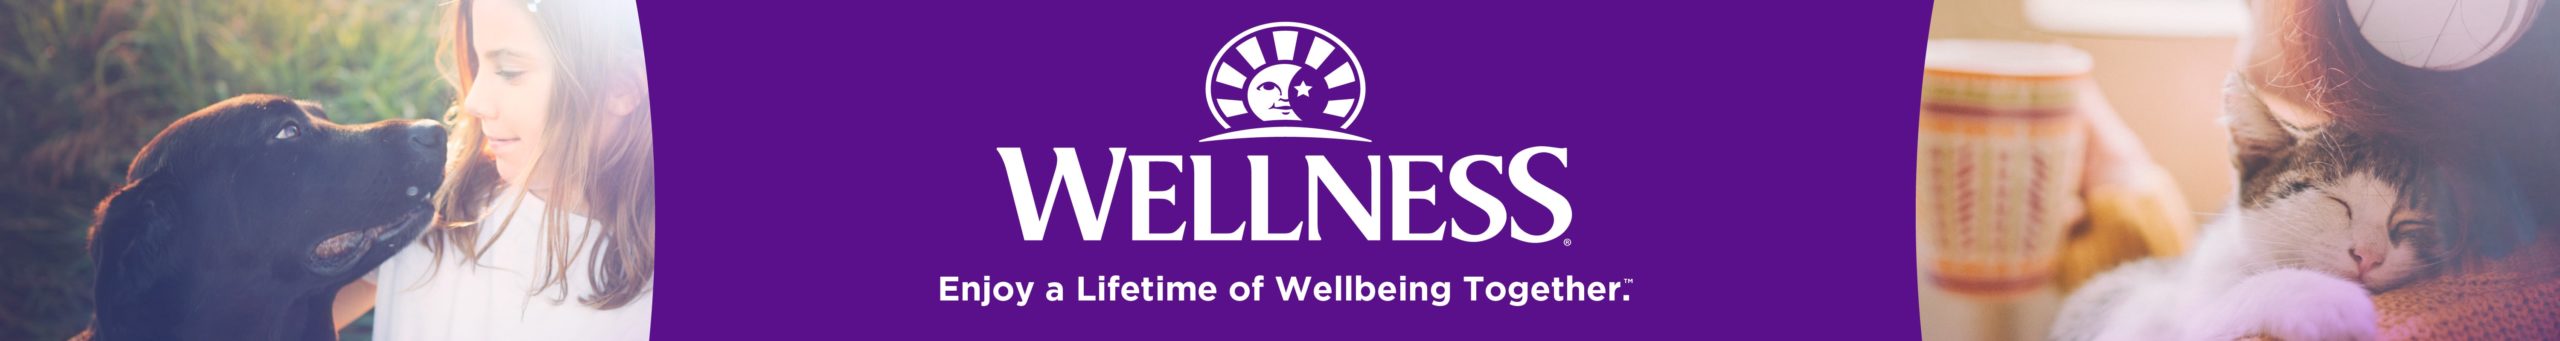 2020-wellness-shop-banner-1440w-192h